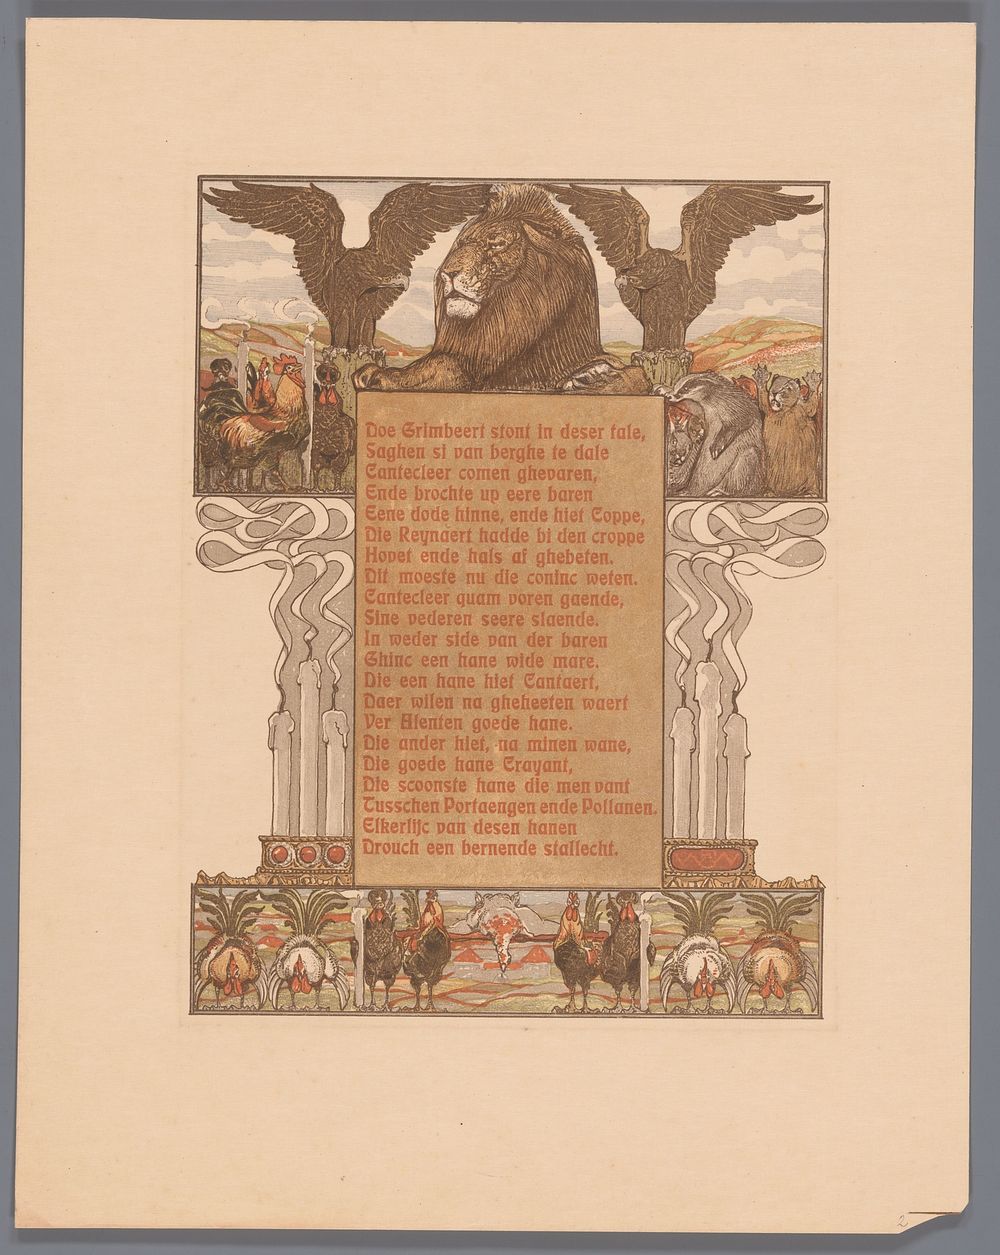 Gedoofde kaarsen en leeuw (Nobel) geflankeerd door adelaars (1910) by Bernard Willem Wierink